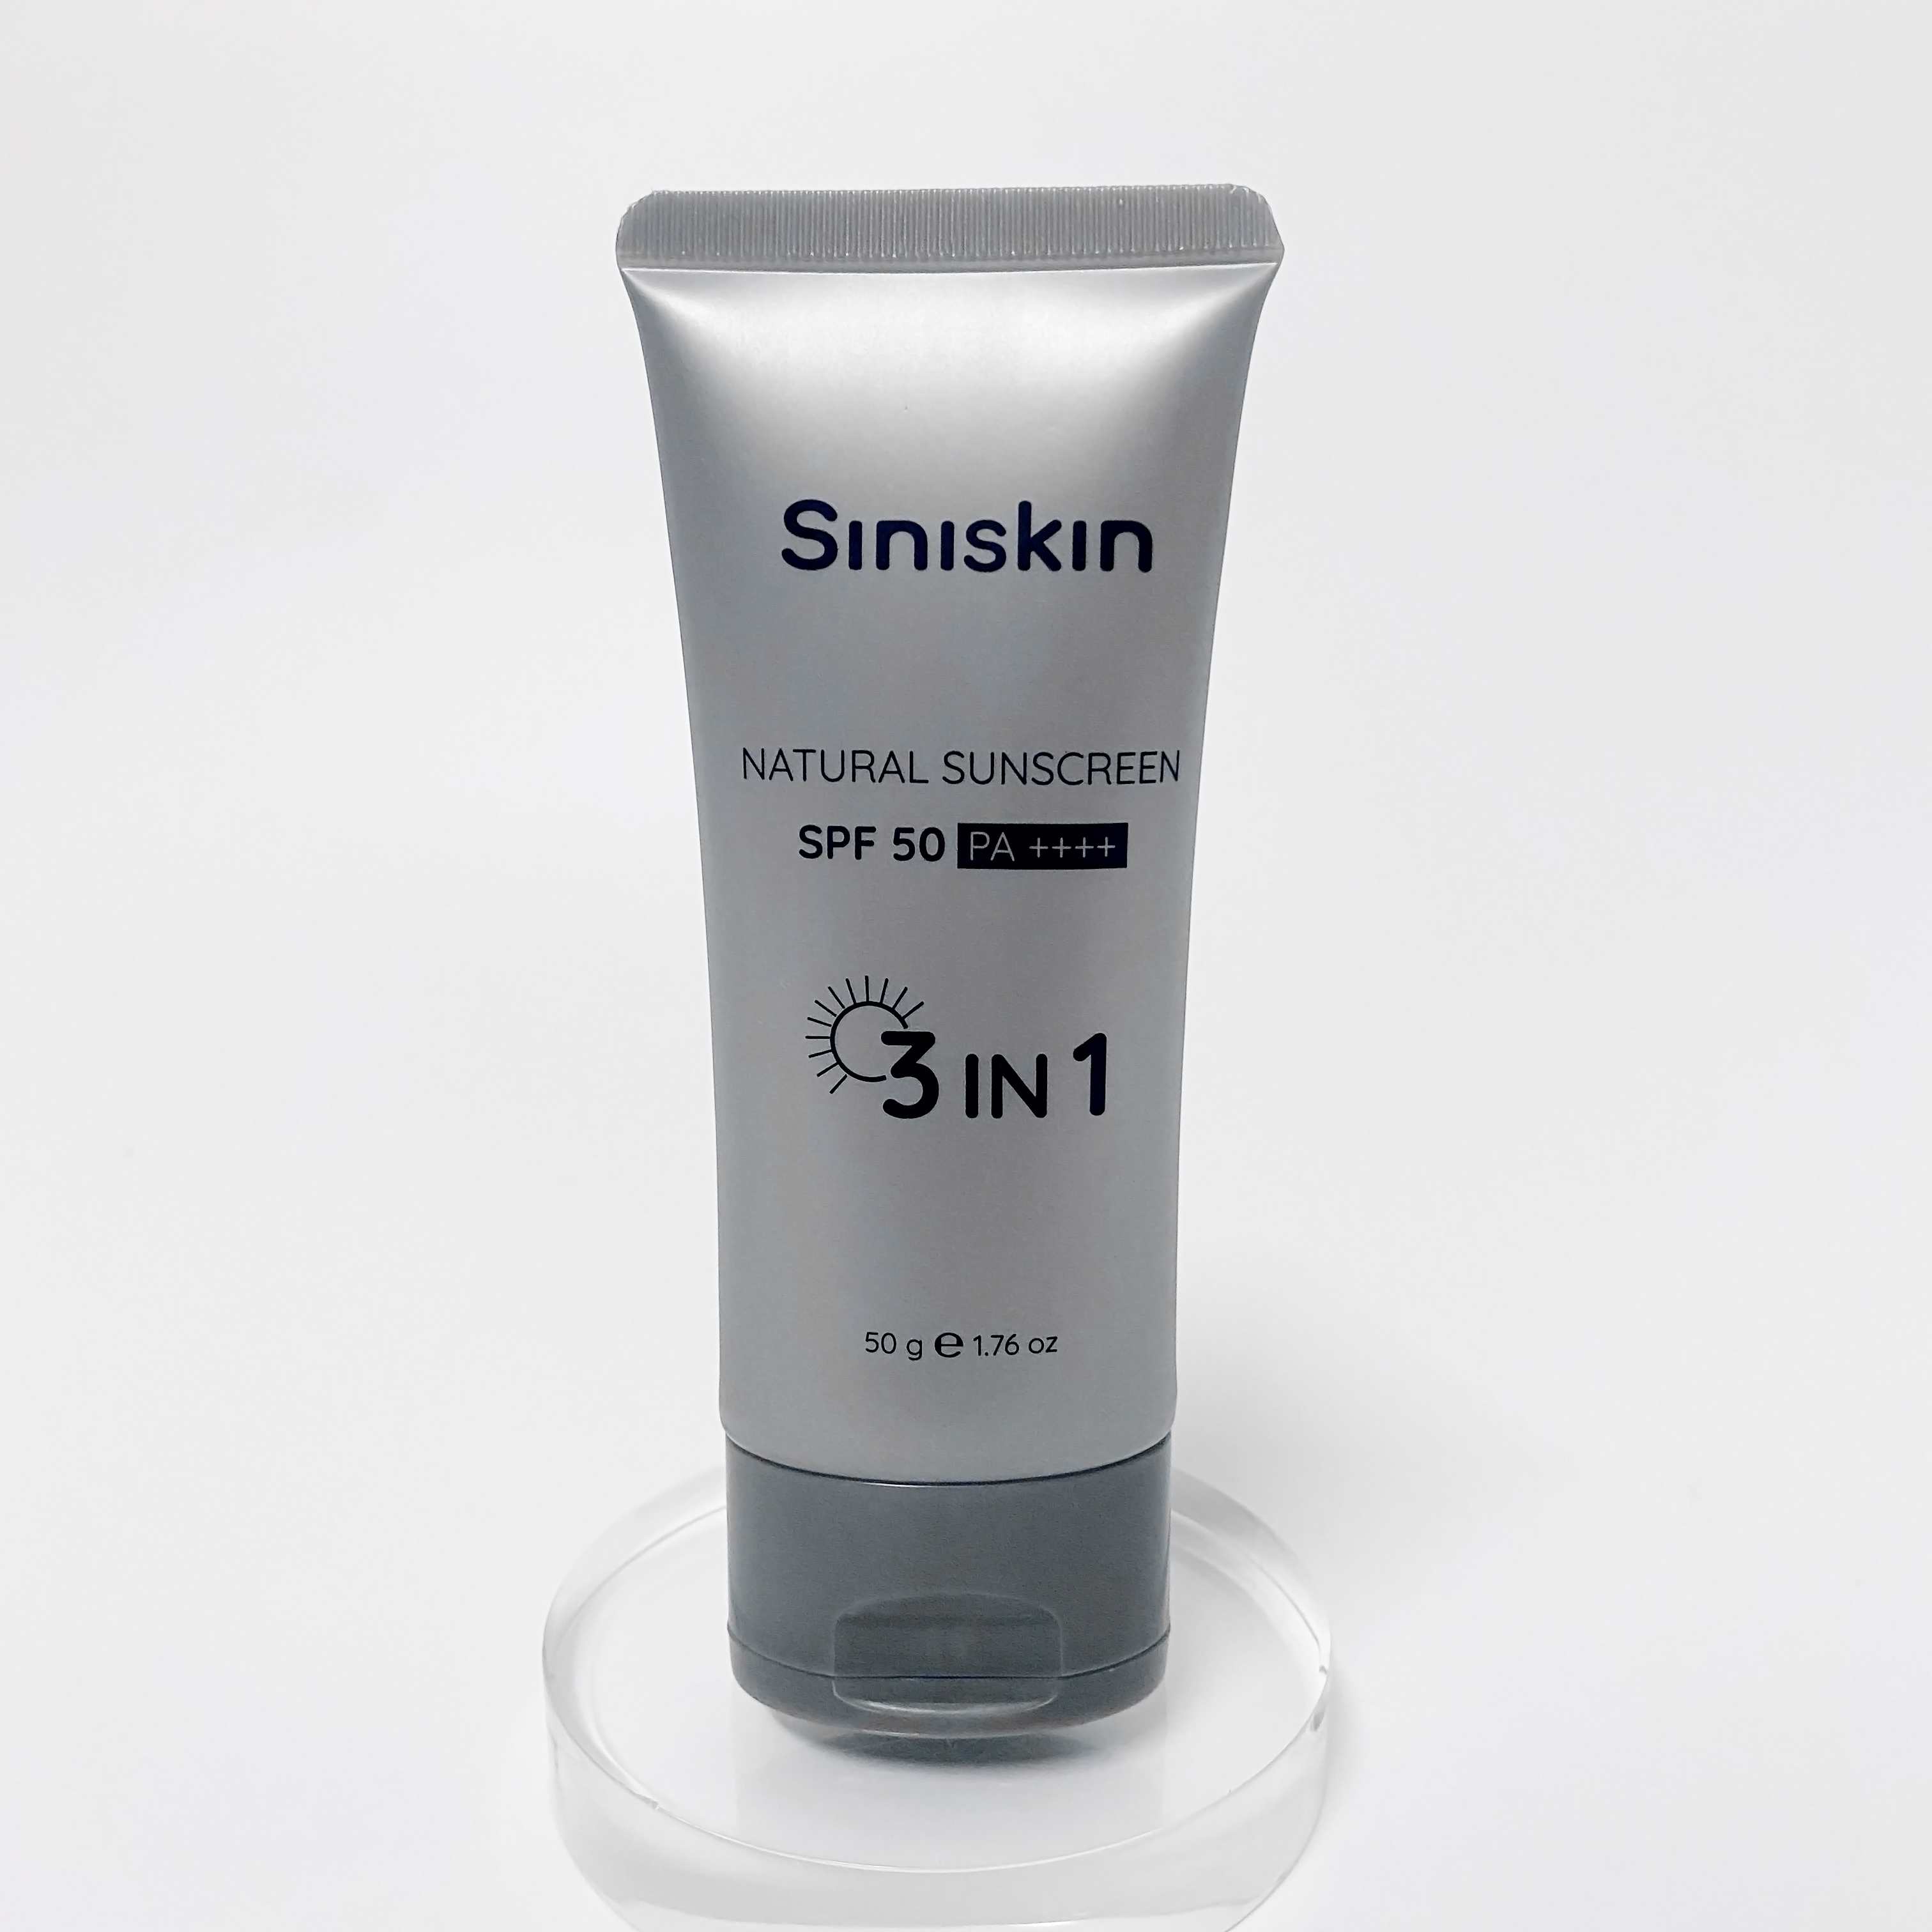 Kem chống nắng tự nhiên Siniskin Natural Sunscreen chất lượng 3in1 50g